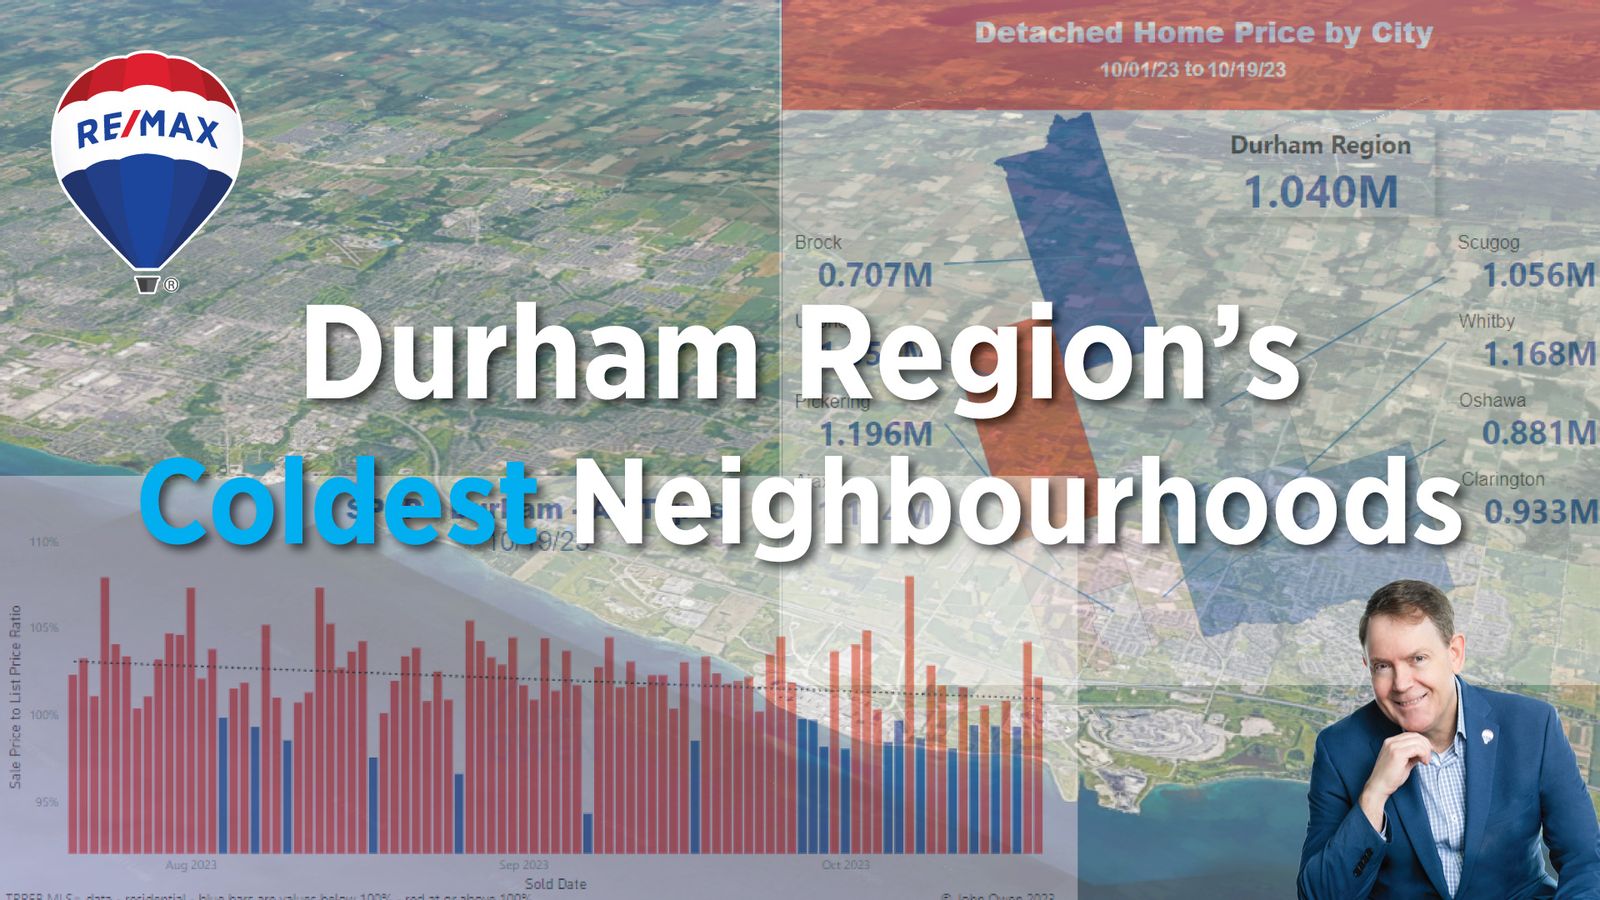 The Coldest Neighbourhoods in Durham Region Real Estate